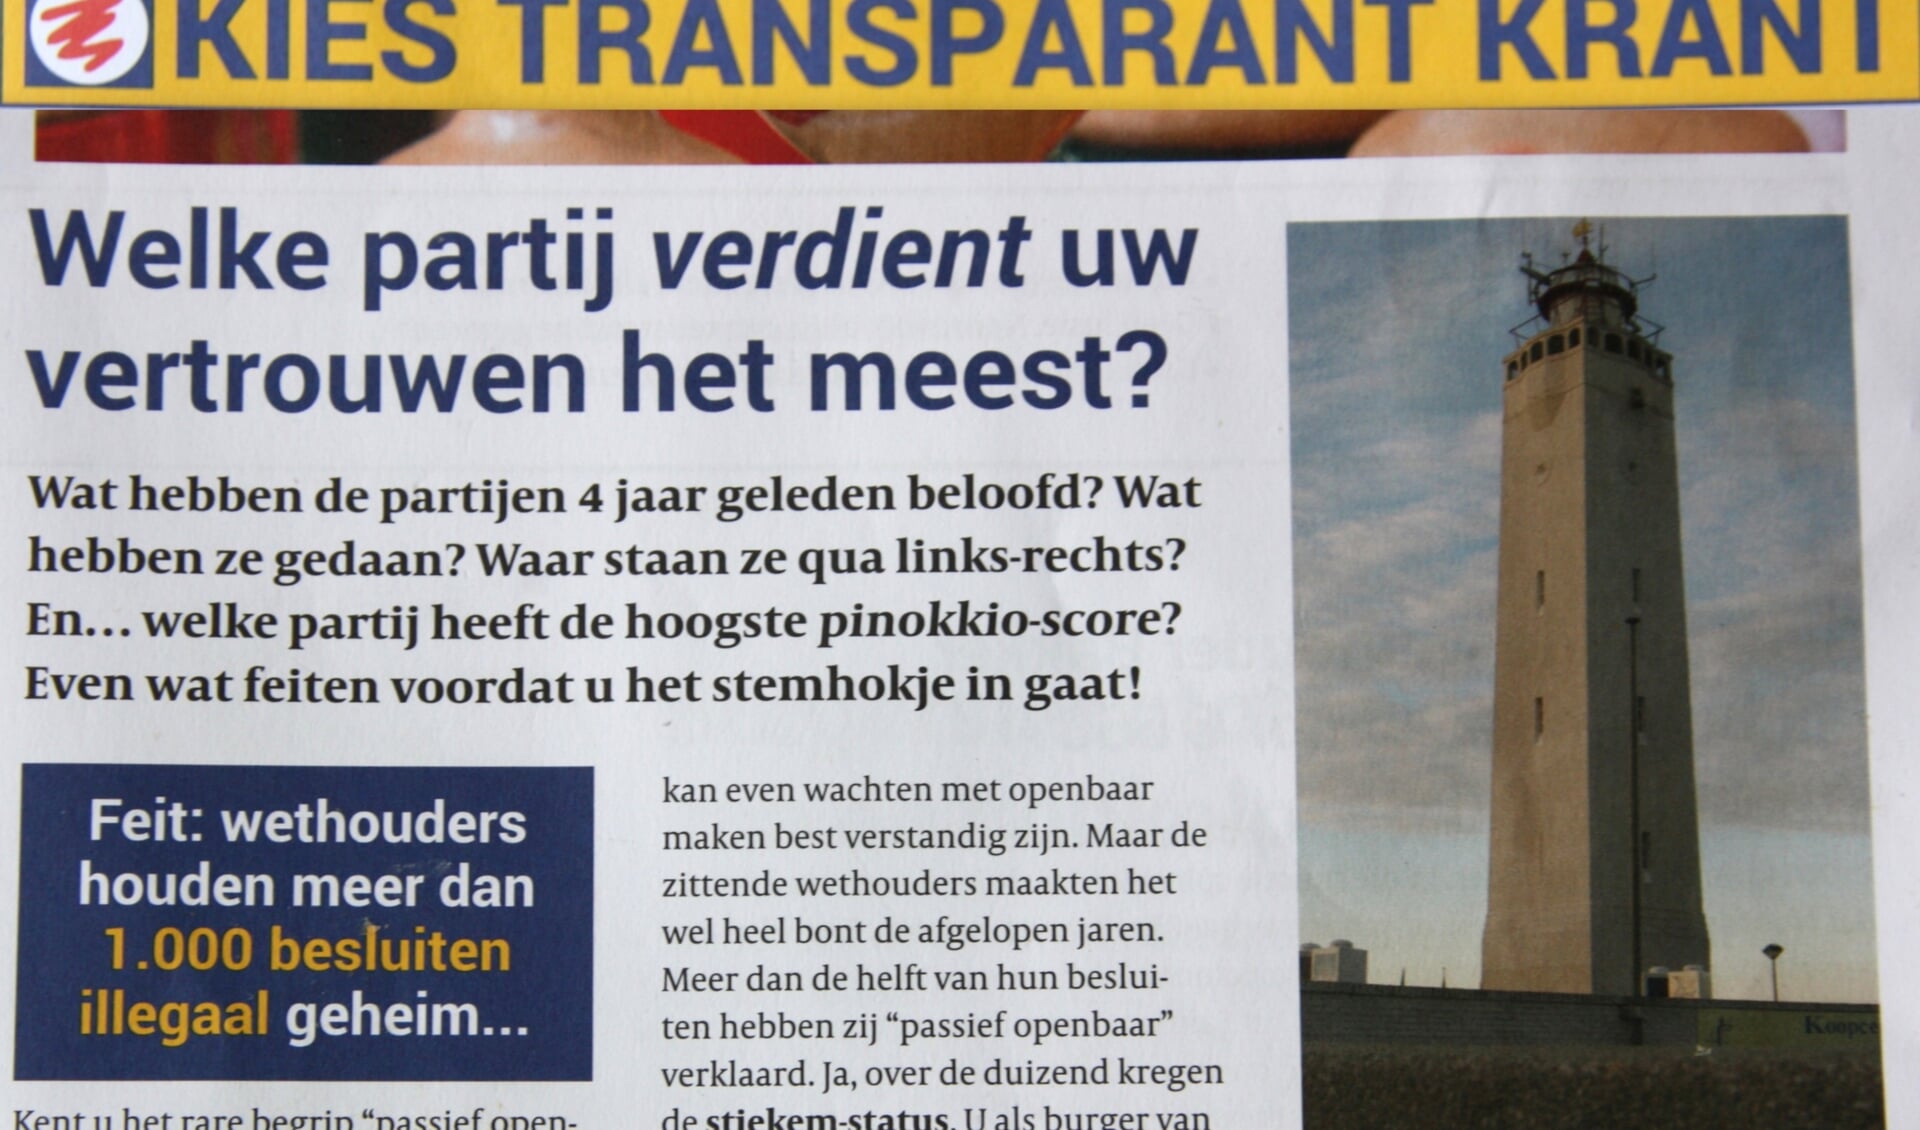 De Kies Transparant Krant veroorzaakte een heftige reactie van het nog zittende college. | Foto: Wim Siemerink